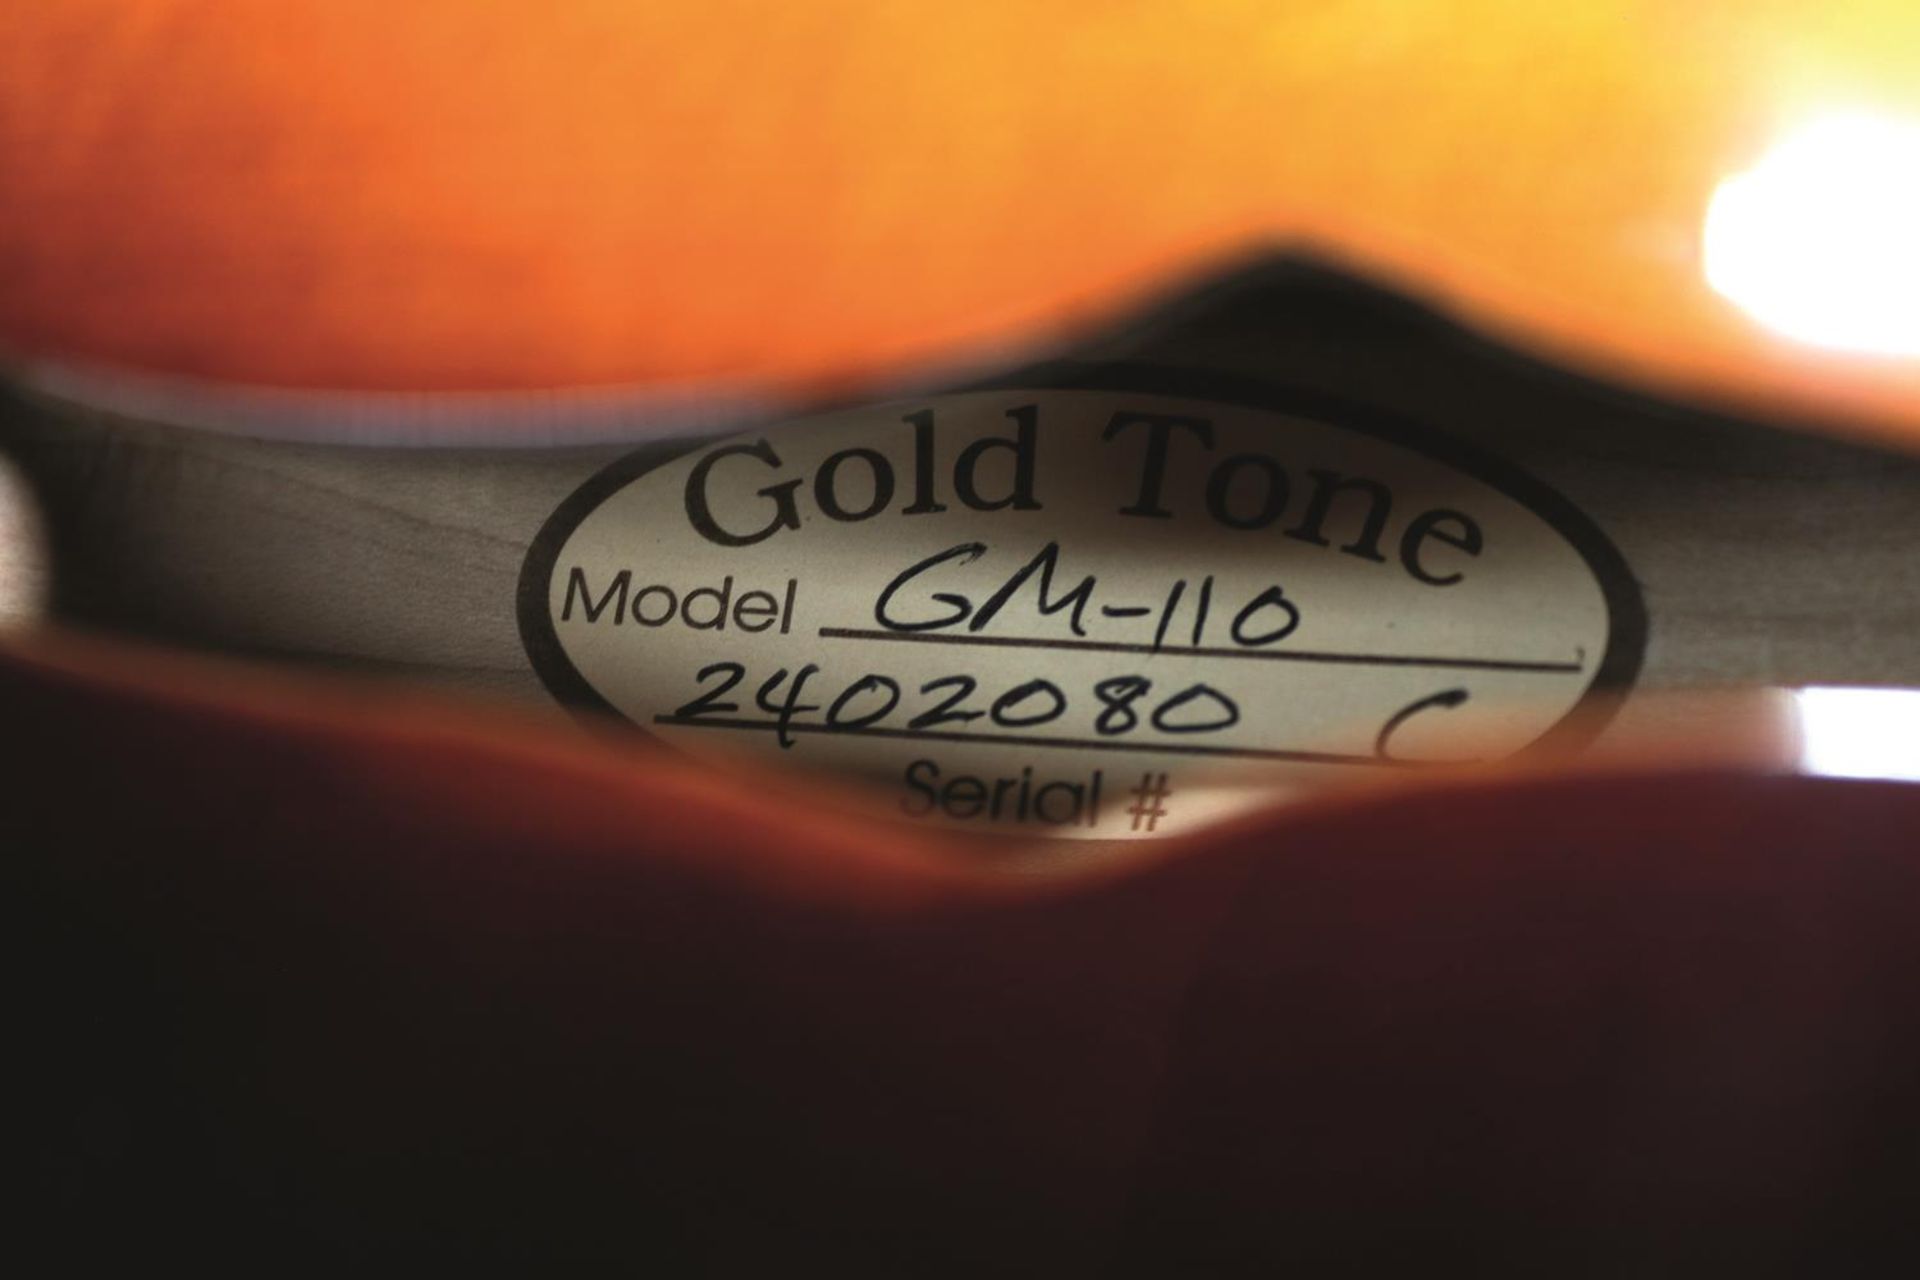 Gold Tone GM-110Riegel-Mandoline. Nahezu neuwertiger Zustand. Im Case. Feine Verarbeitung. Modellnr. - Bild 3 aus 5